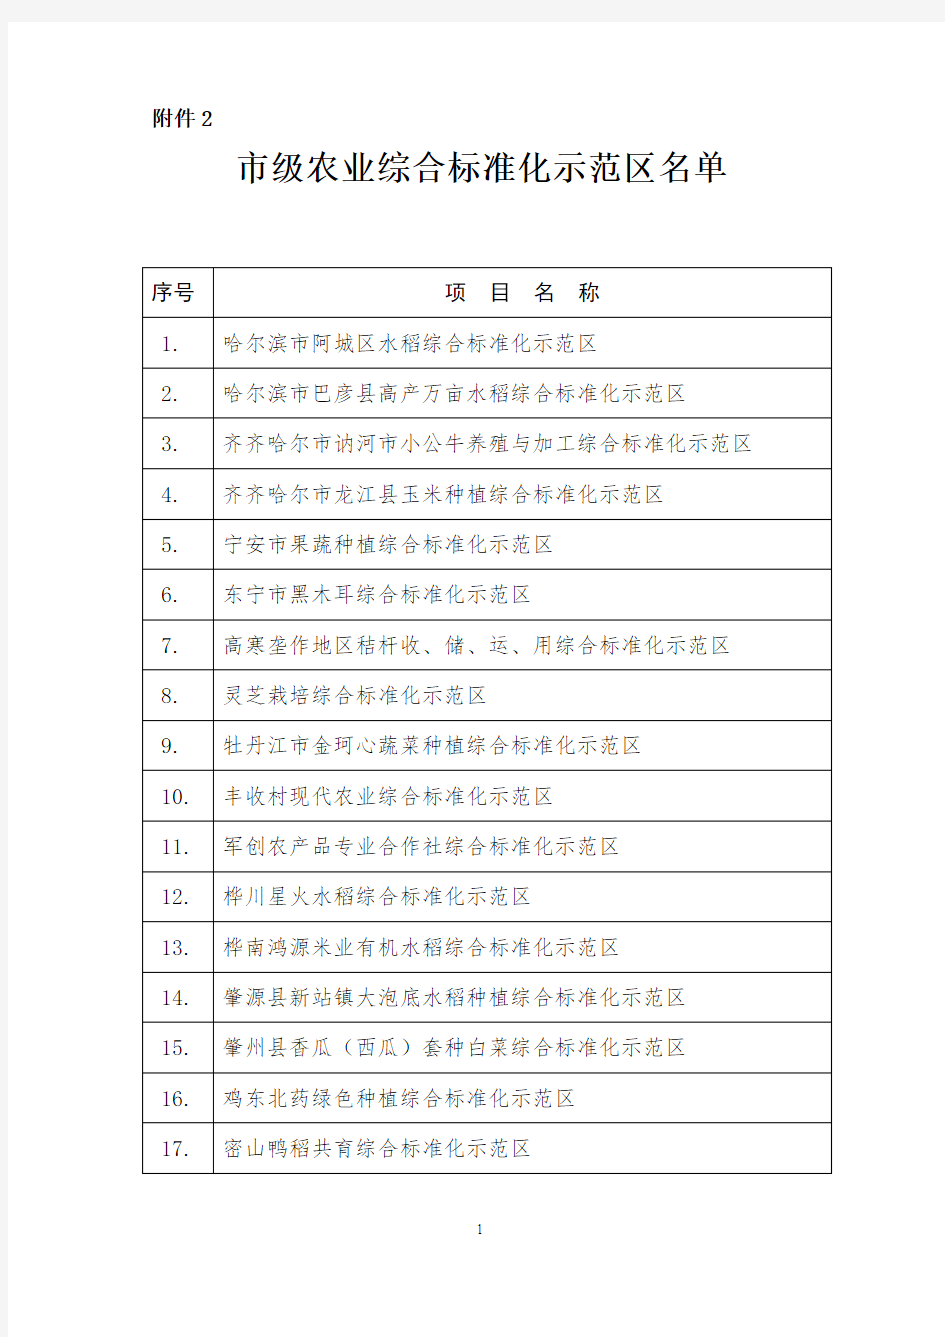 黑龙江历年级农业标准化示范区统计表